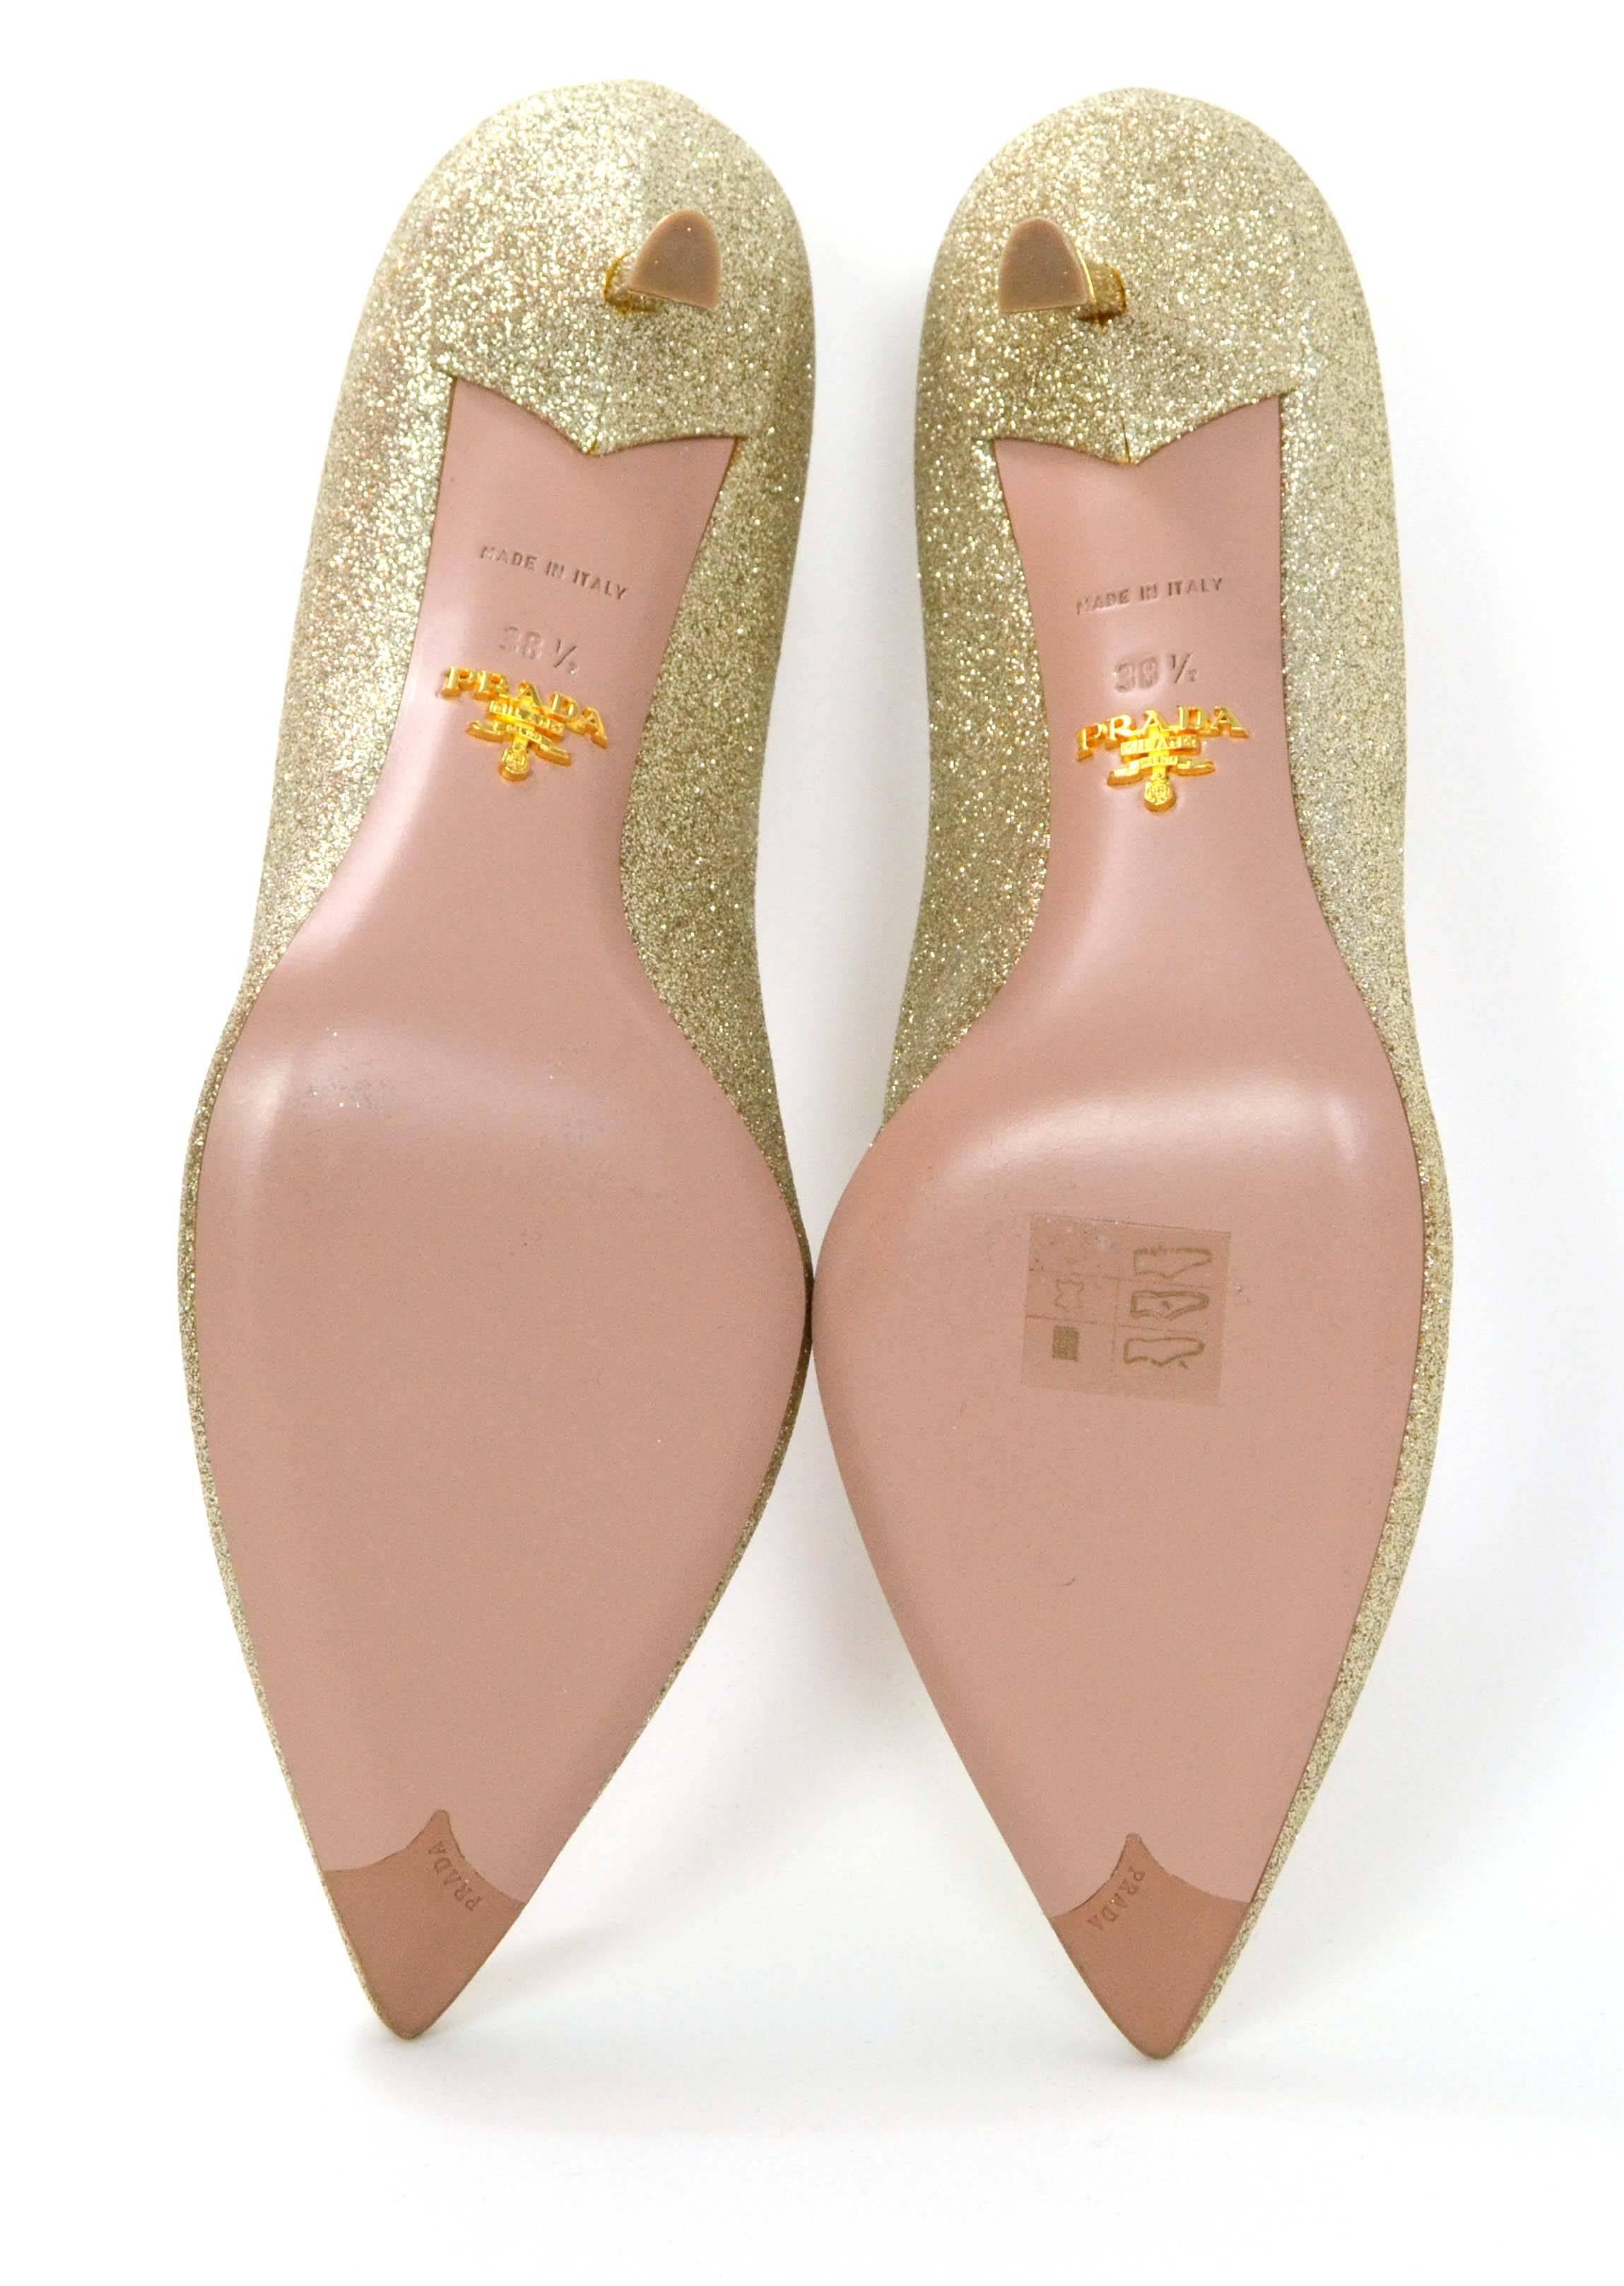 Women's Prada Gold Glitter Kitten Heel Pumps sz 38.5